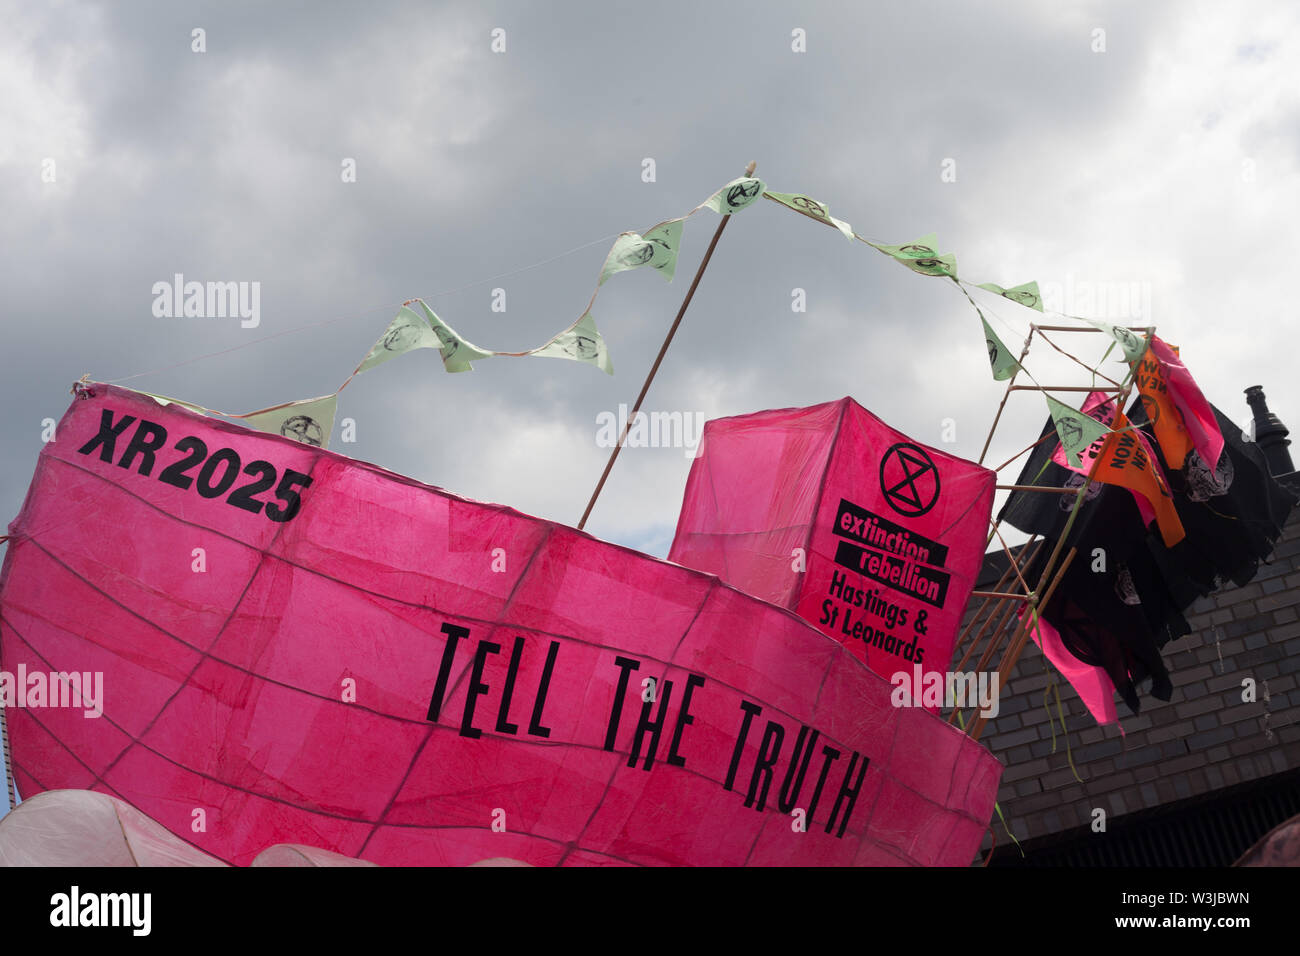 Barco de pesca rosa prop utilizado por extinción rebelión promoviendo el movimiento contra el clima desglose en Hastings el día de la Jerga Pirata, Hastings, Sussex, Reino Unido Foto de stock